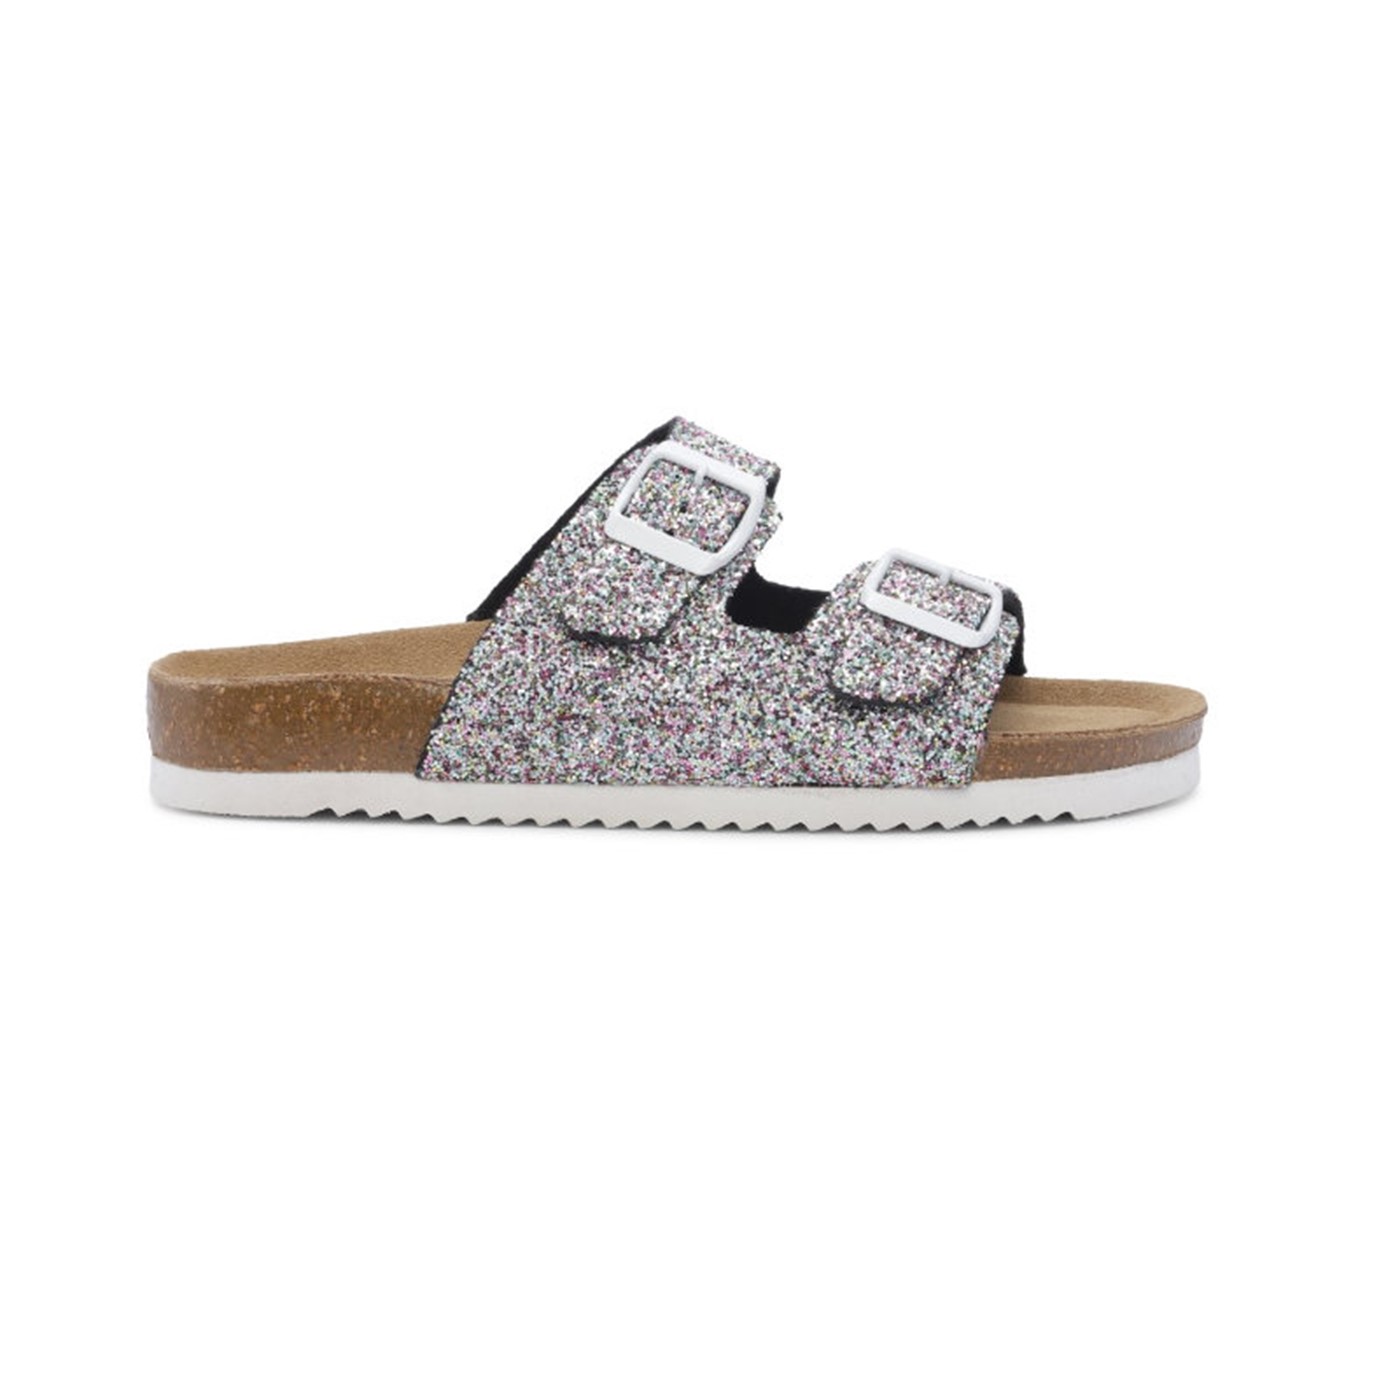 pige sandal glitter